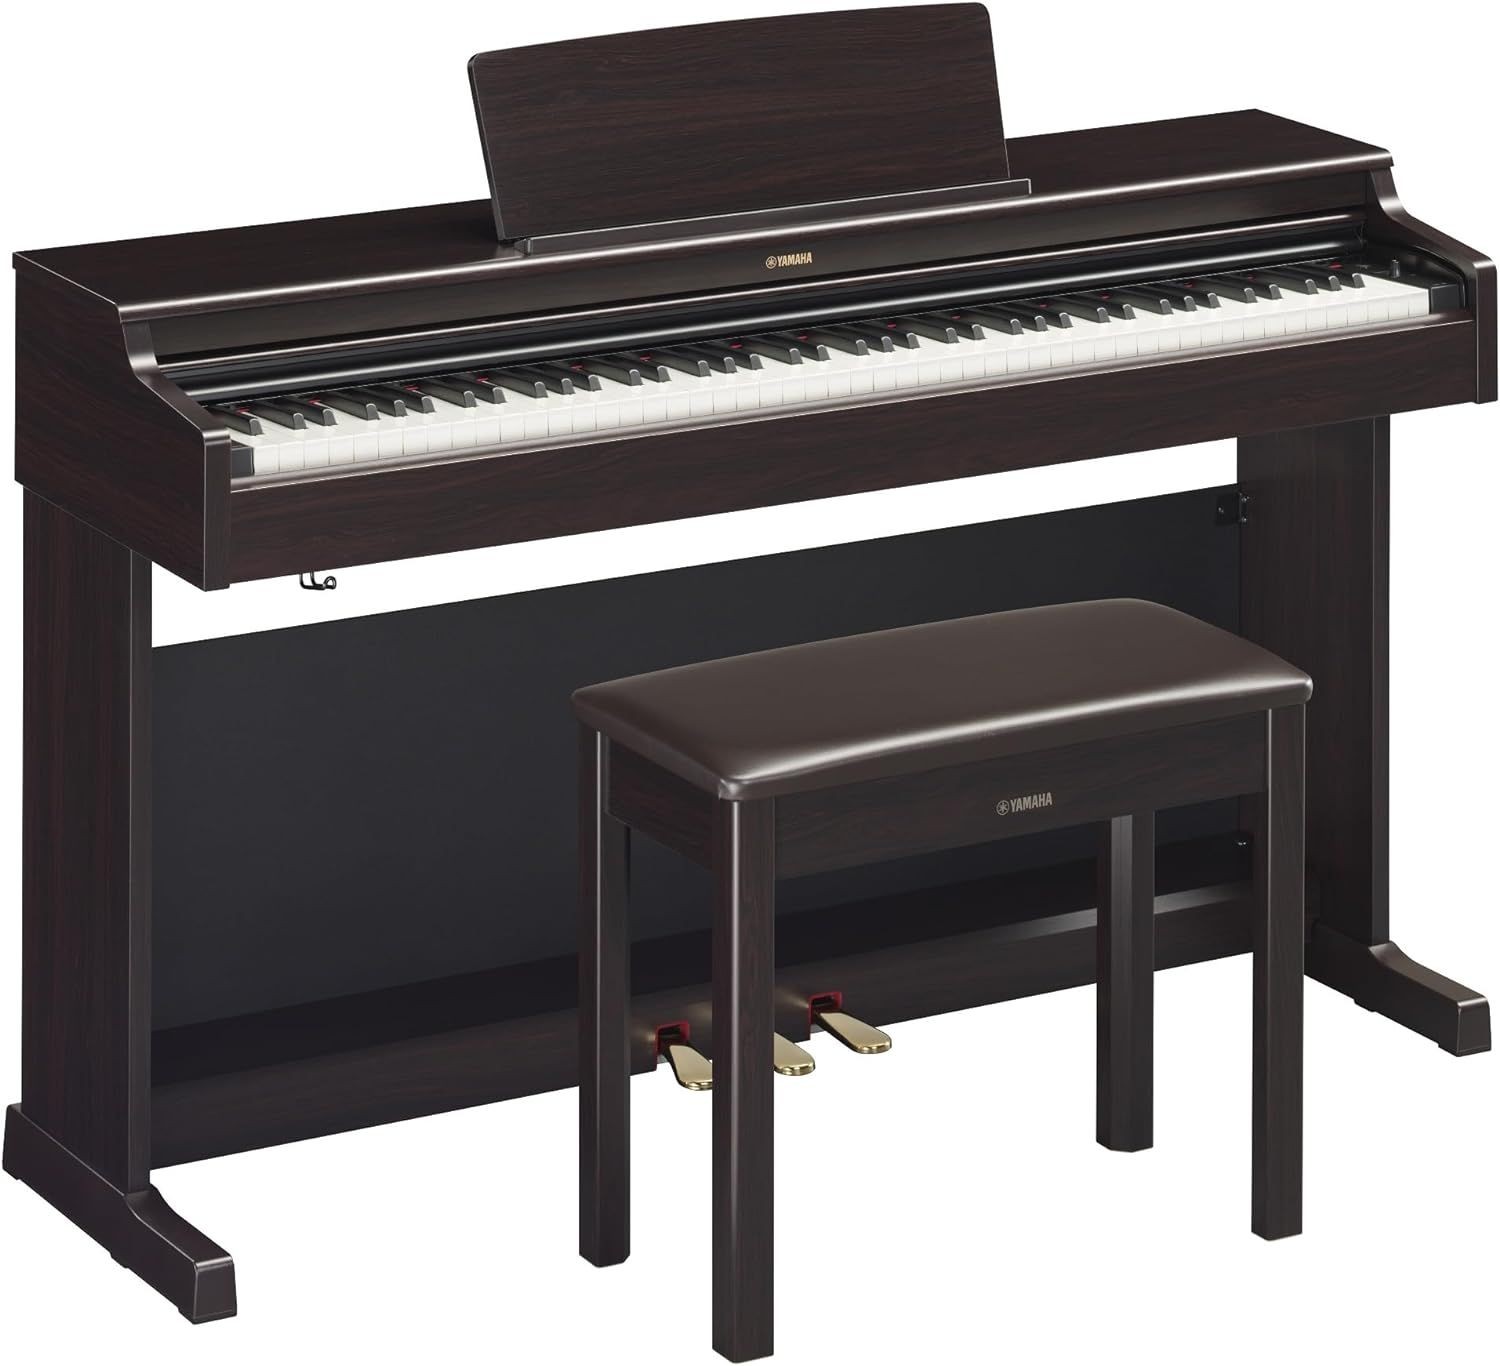 brown Yamaha YDP165 Arius series keyboard plus bench